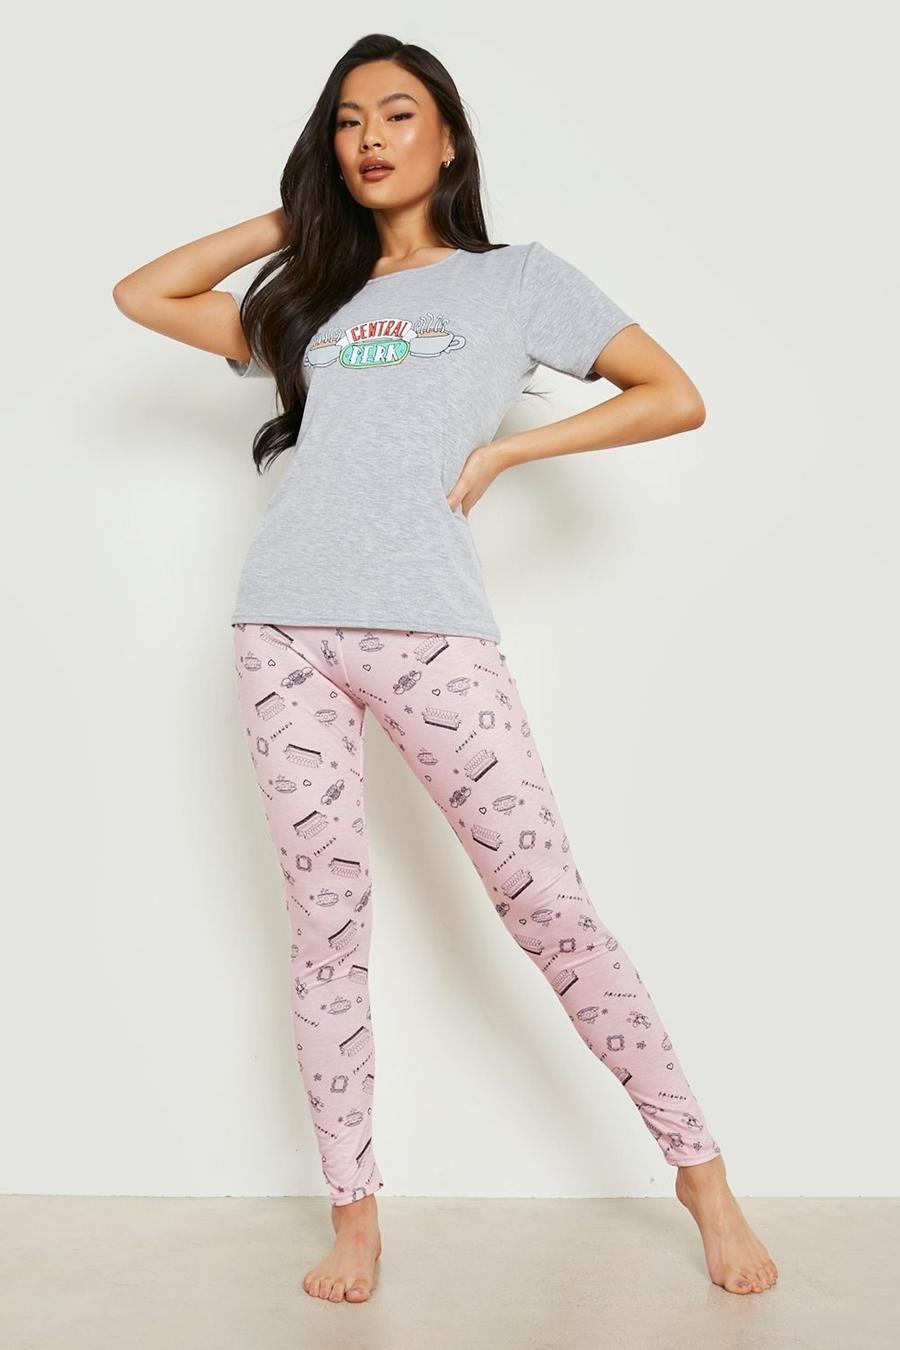 Pijama de leggings con estampado de Friends Central Perk, Blush rosa